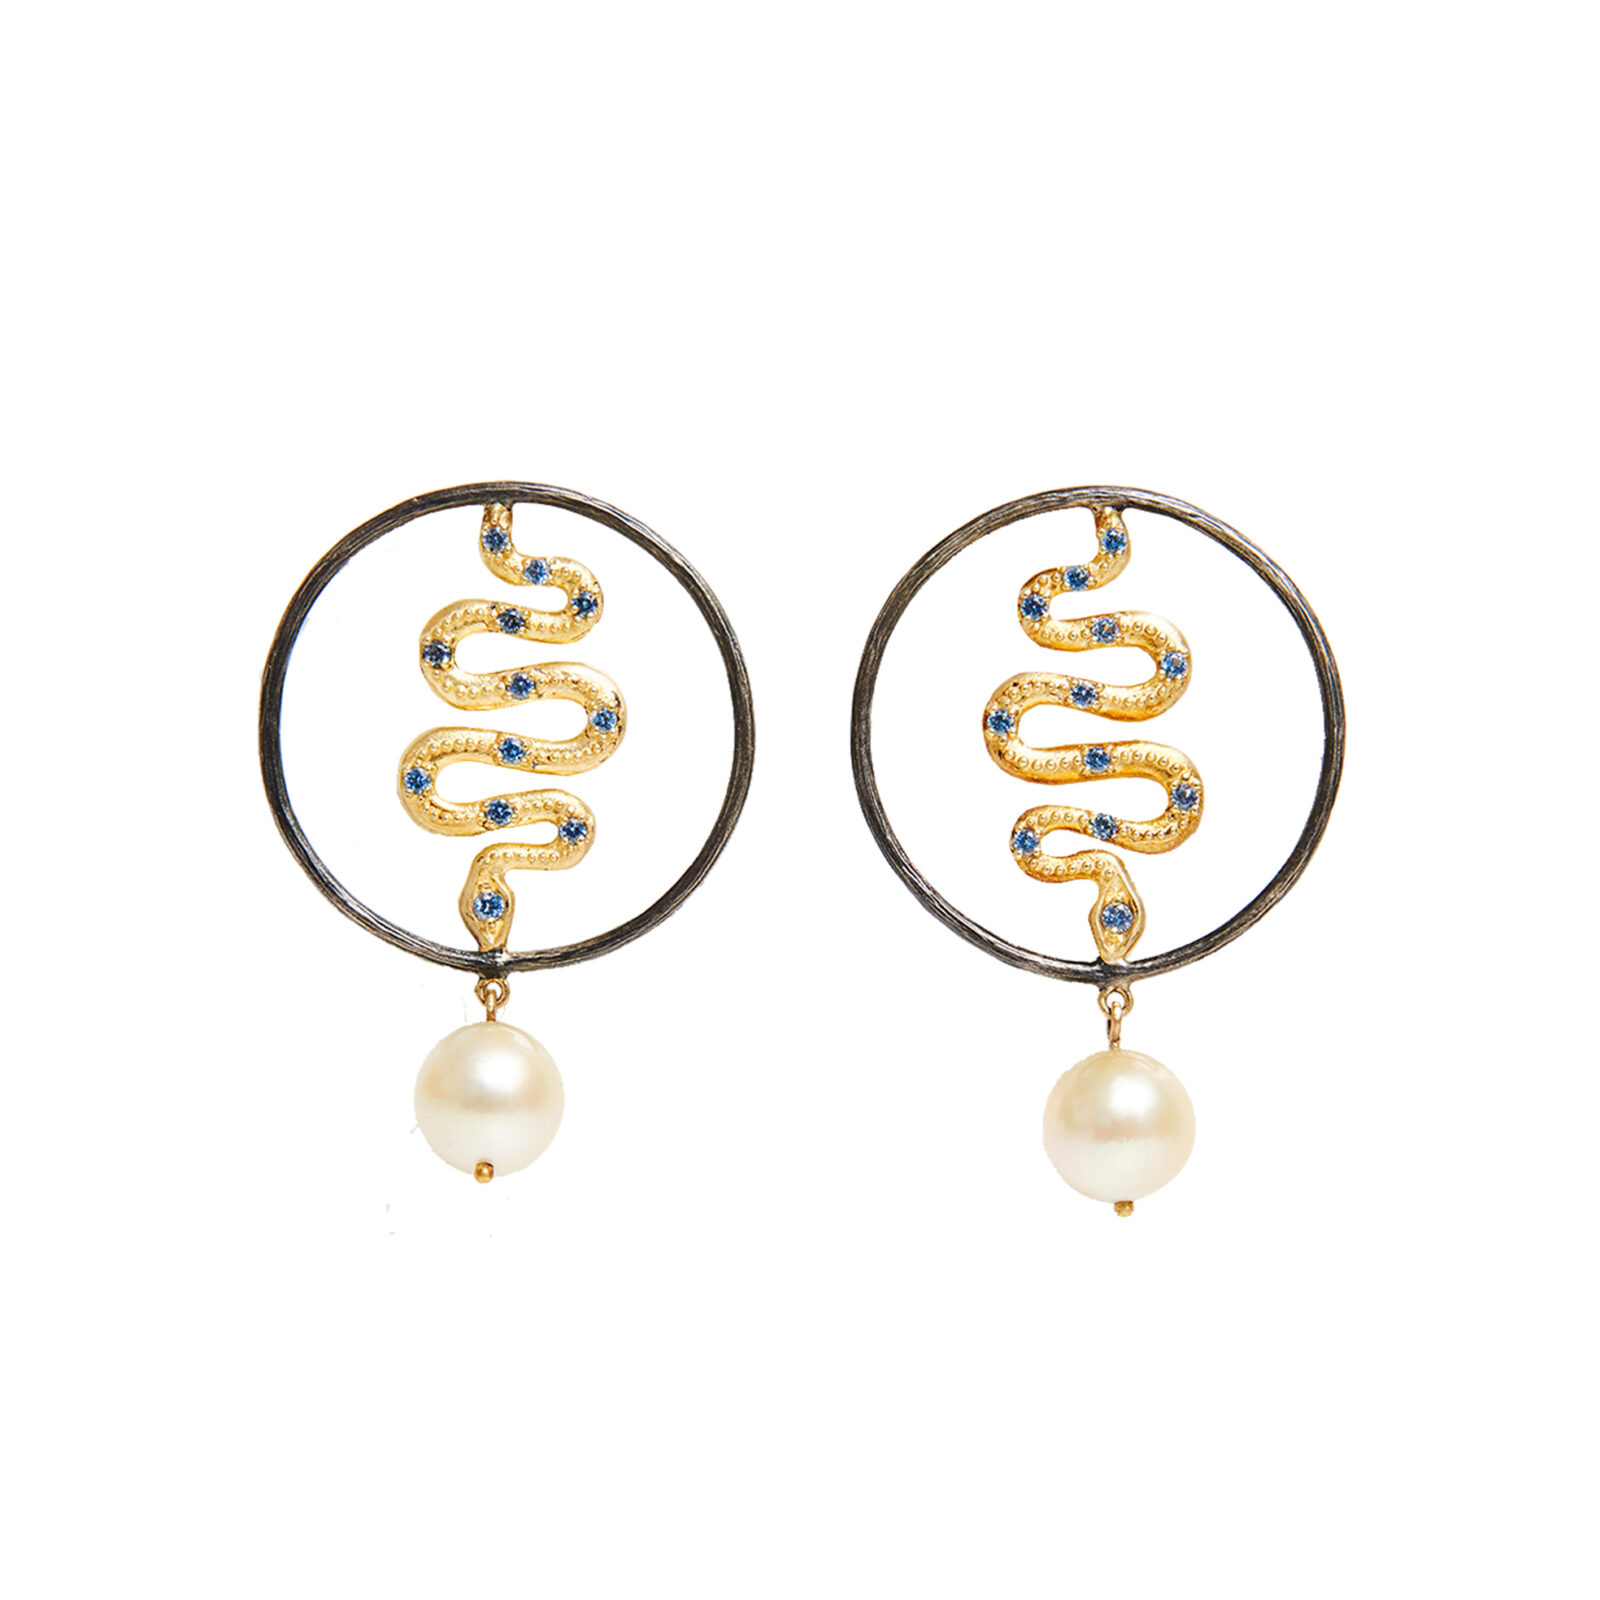 Buy Pearl Jewellery Online India  Pearl Drop  Studs Earrings  Gehna